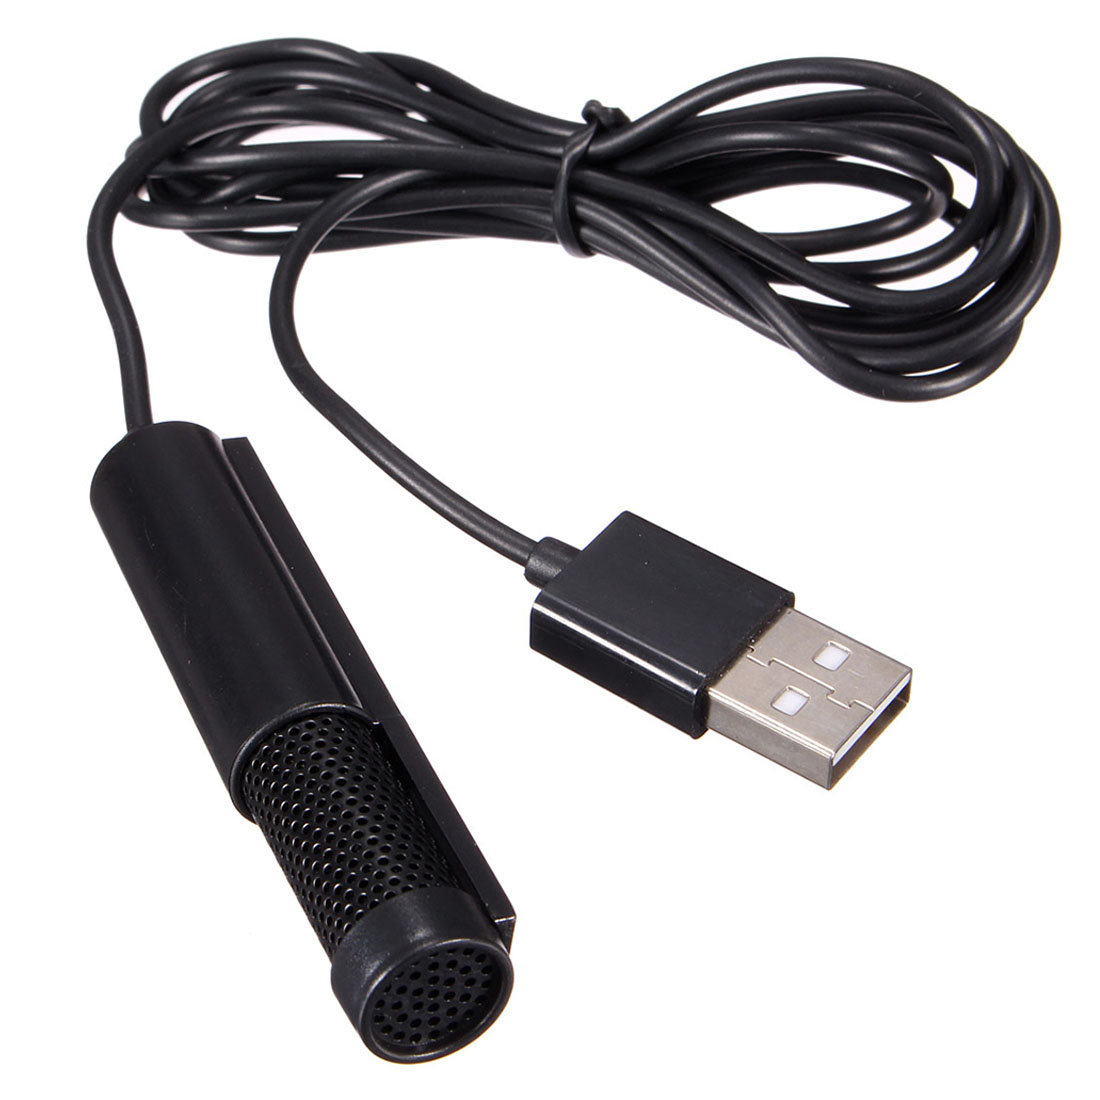 microphone for mac mini 2014